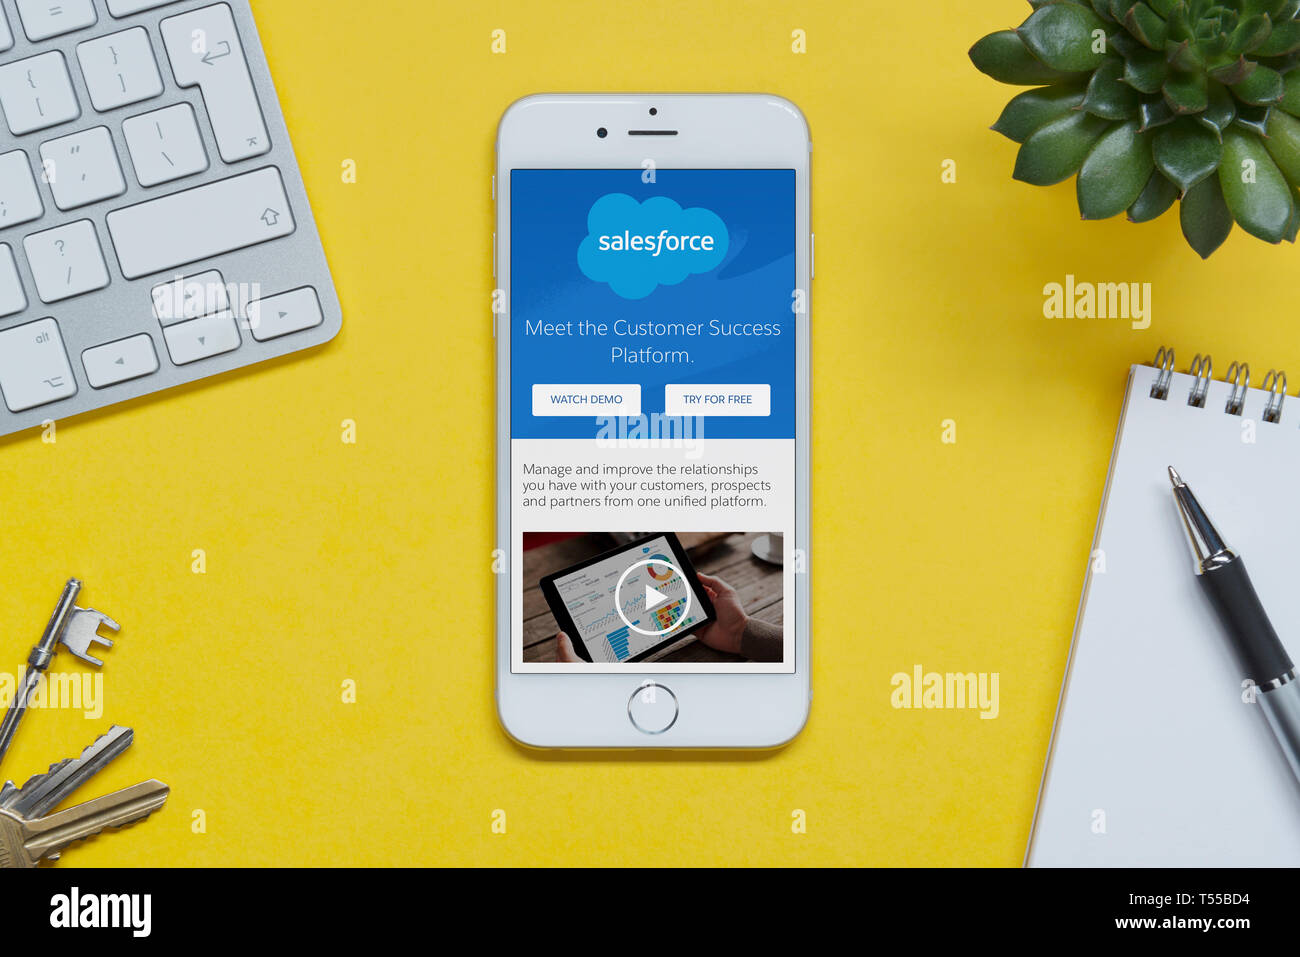 Ein iPhone mit der Salesforce-website ruht auf einem gelben Hintergrund Tabelle mit einer Tastatur, Tasten, Notepad und Anlage (nur redaktionelle Nutzung). Stockfoto